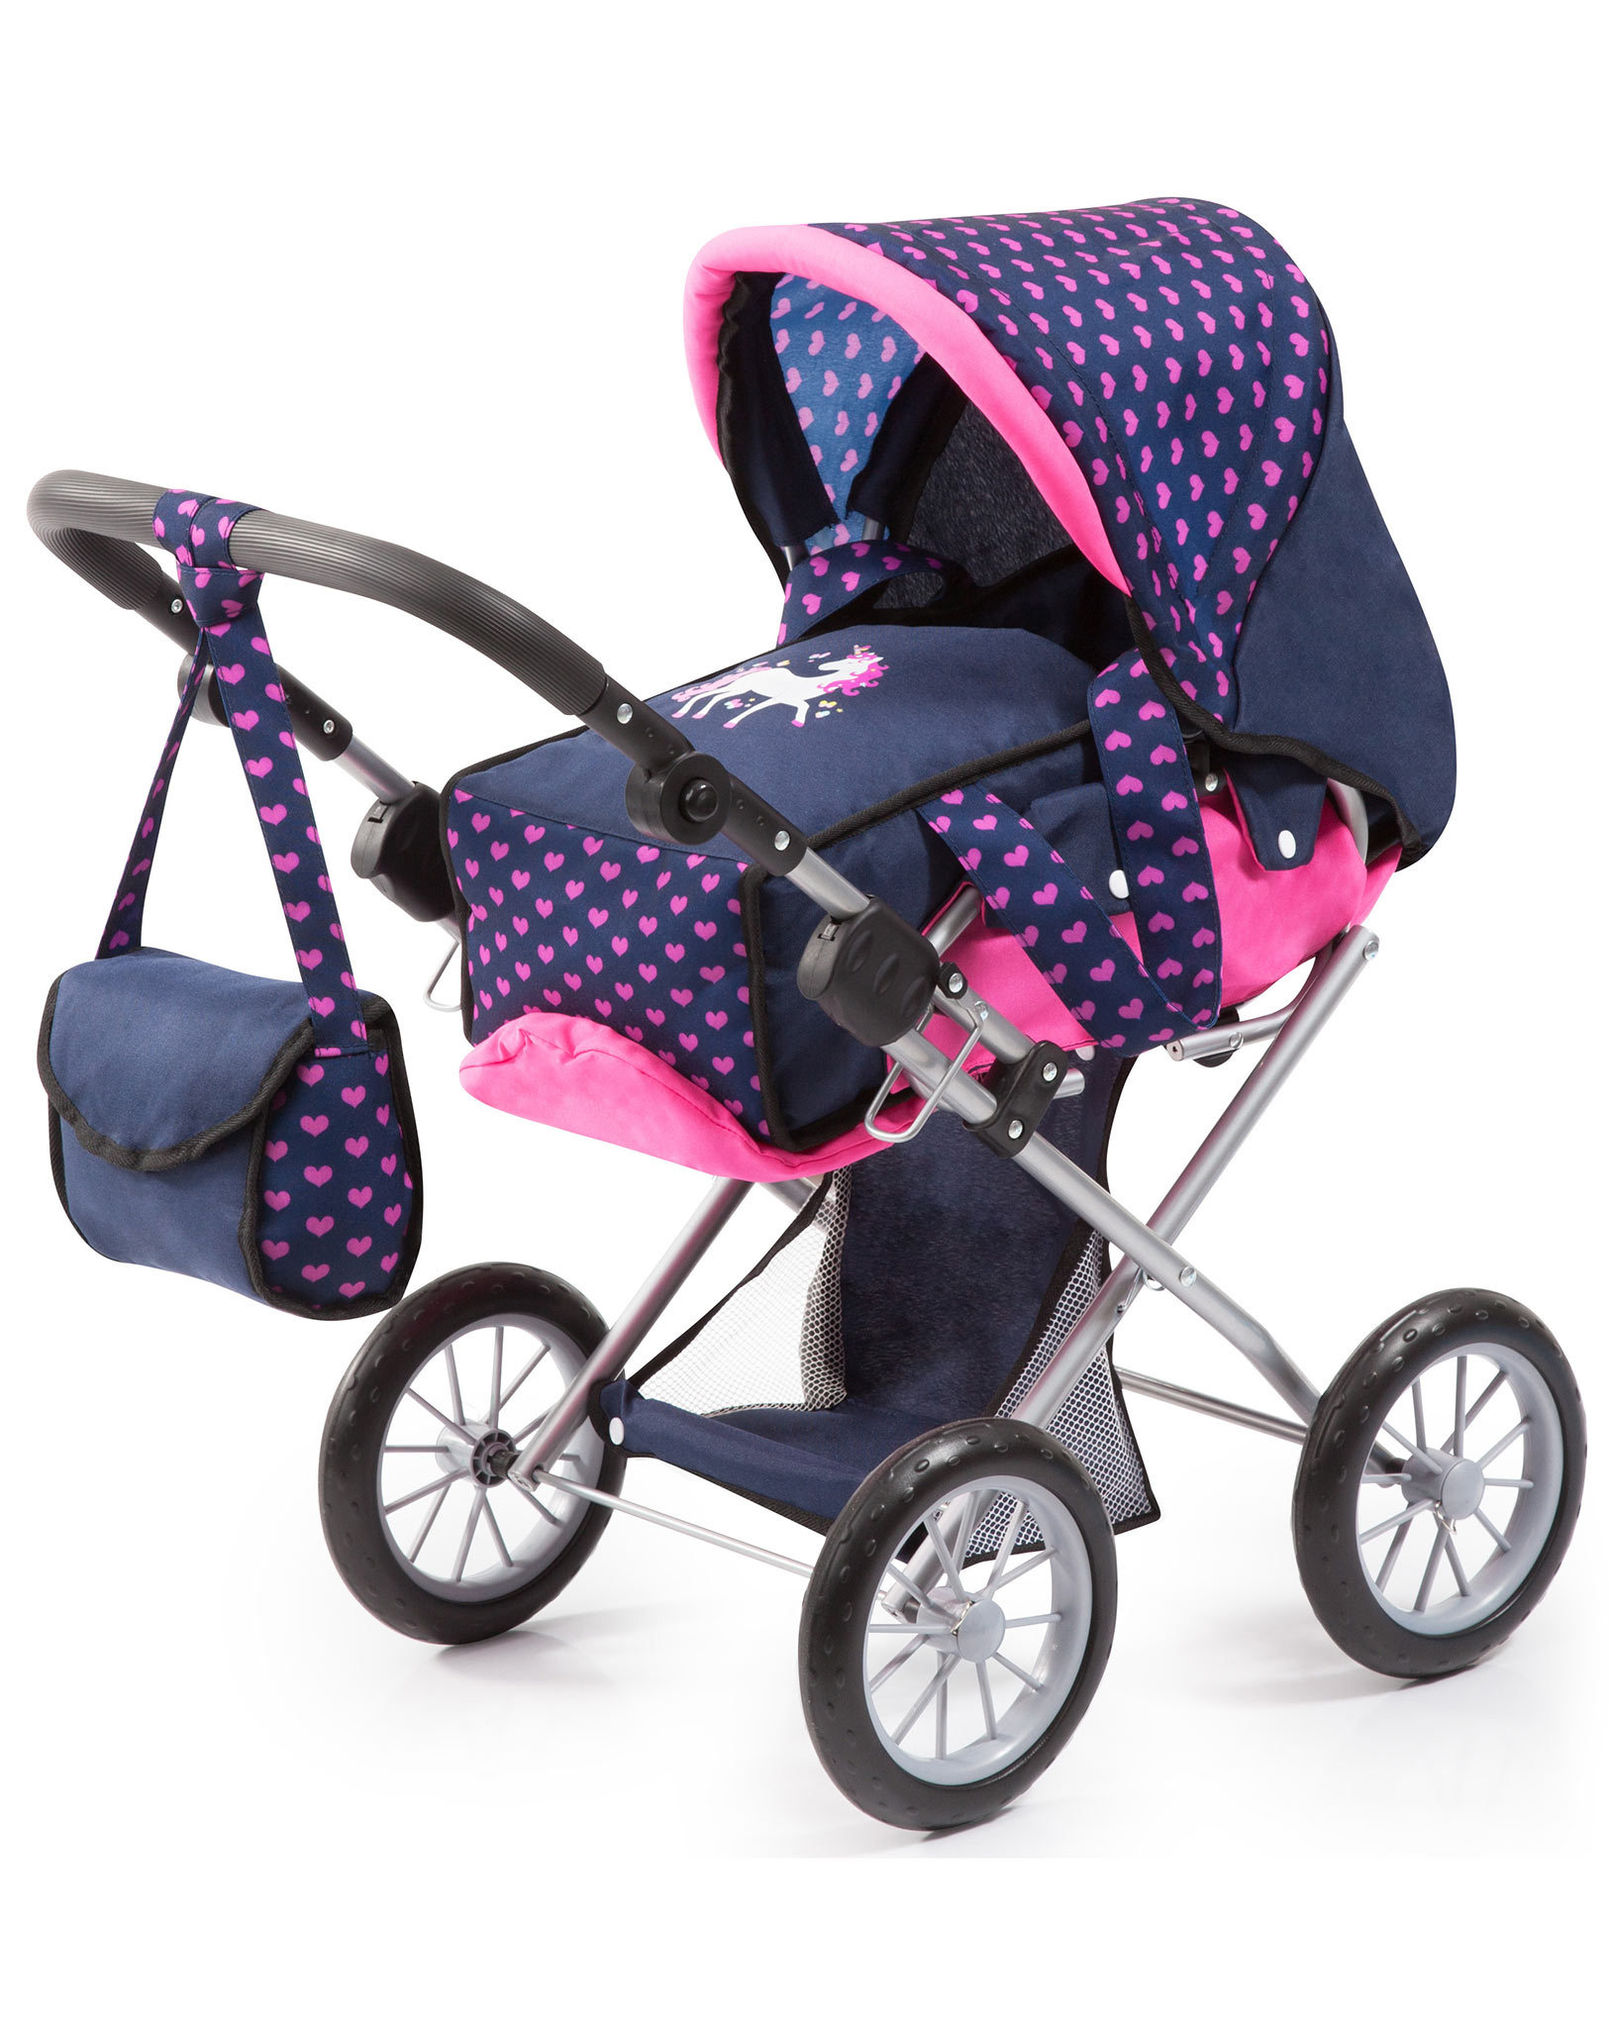 Puppenwagen CITY STAR UNICORN 3-teilig in blau pink kaufen